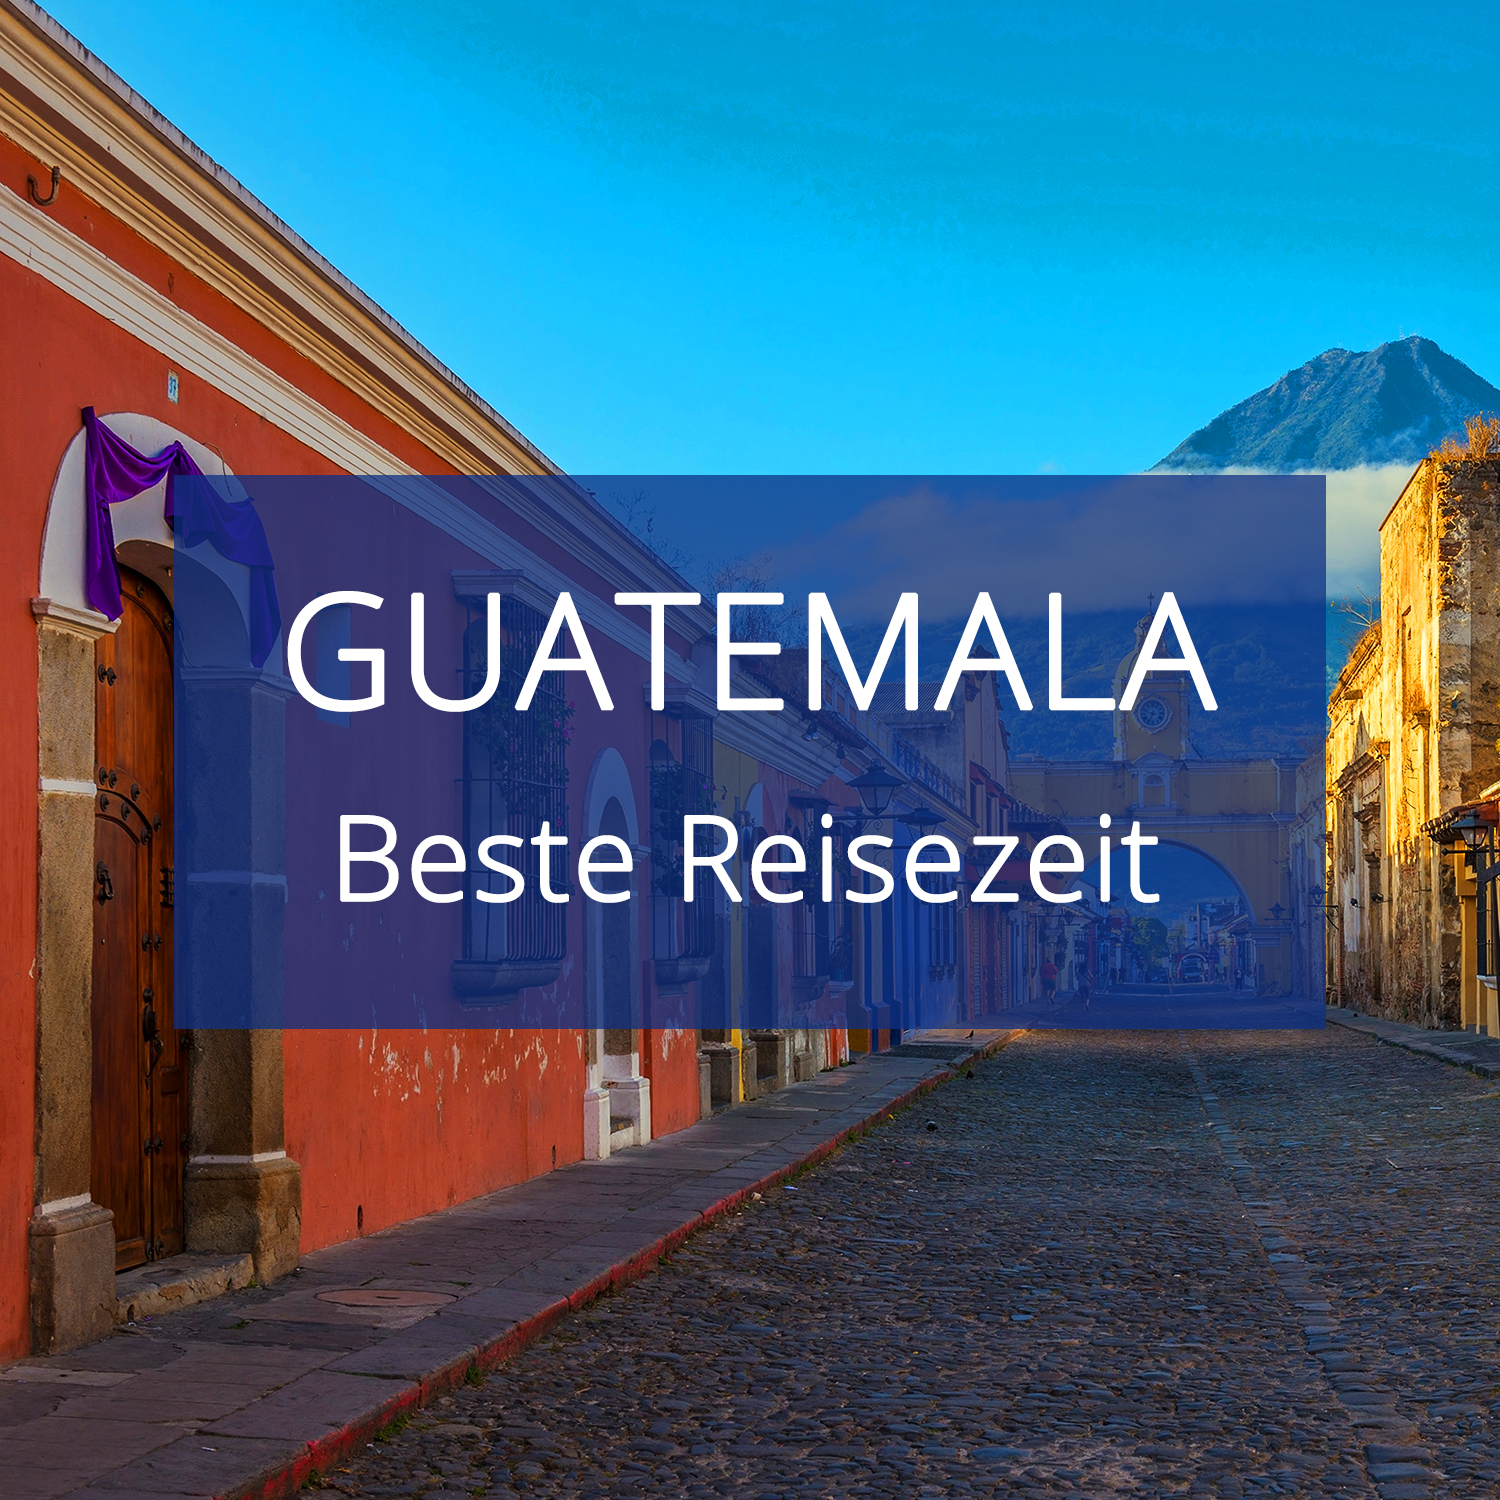 Beste Reisezeit für Guatemala Temepraturen & Klima